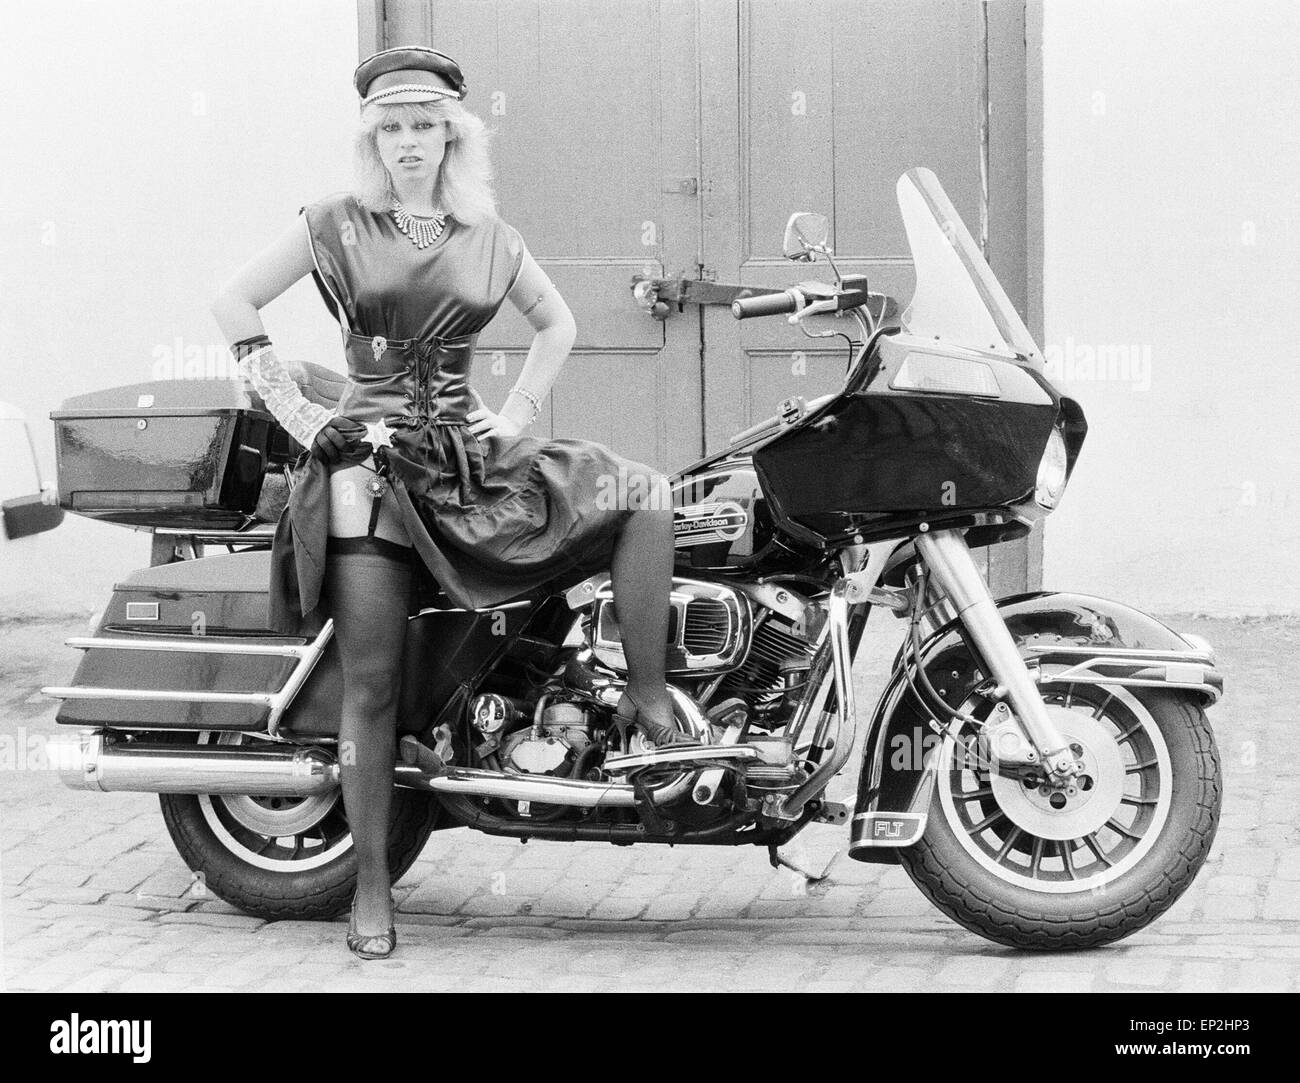 Ventidue anni di Kim Jones che ha fatto un record chiamato 'quando sei un disturbatore' con un gruppo Harley D e il calcio inizi, pone accanto a un Harley Davidson Moto. Il 26 luglio 1983. Foto Stock